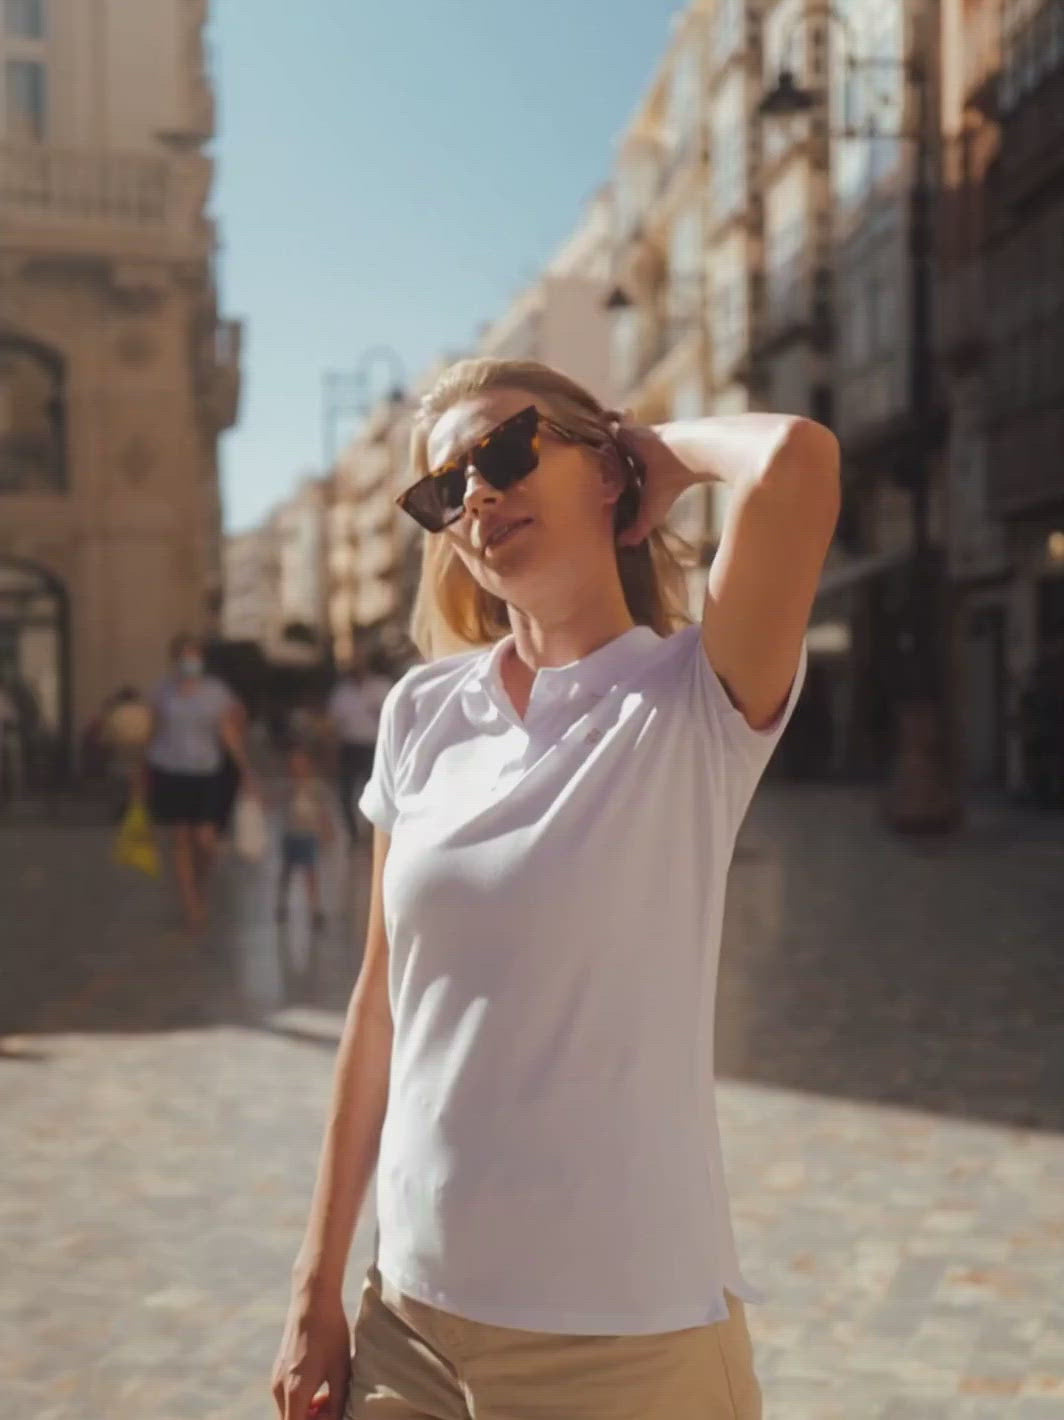 Milano dámské polo tričko z biobavlny bílé žena stojí na chodníku ve městě